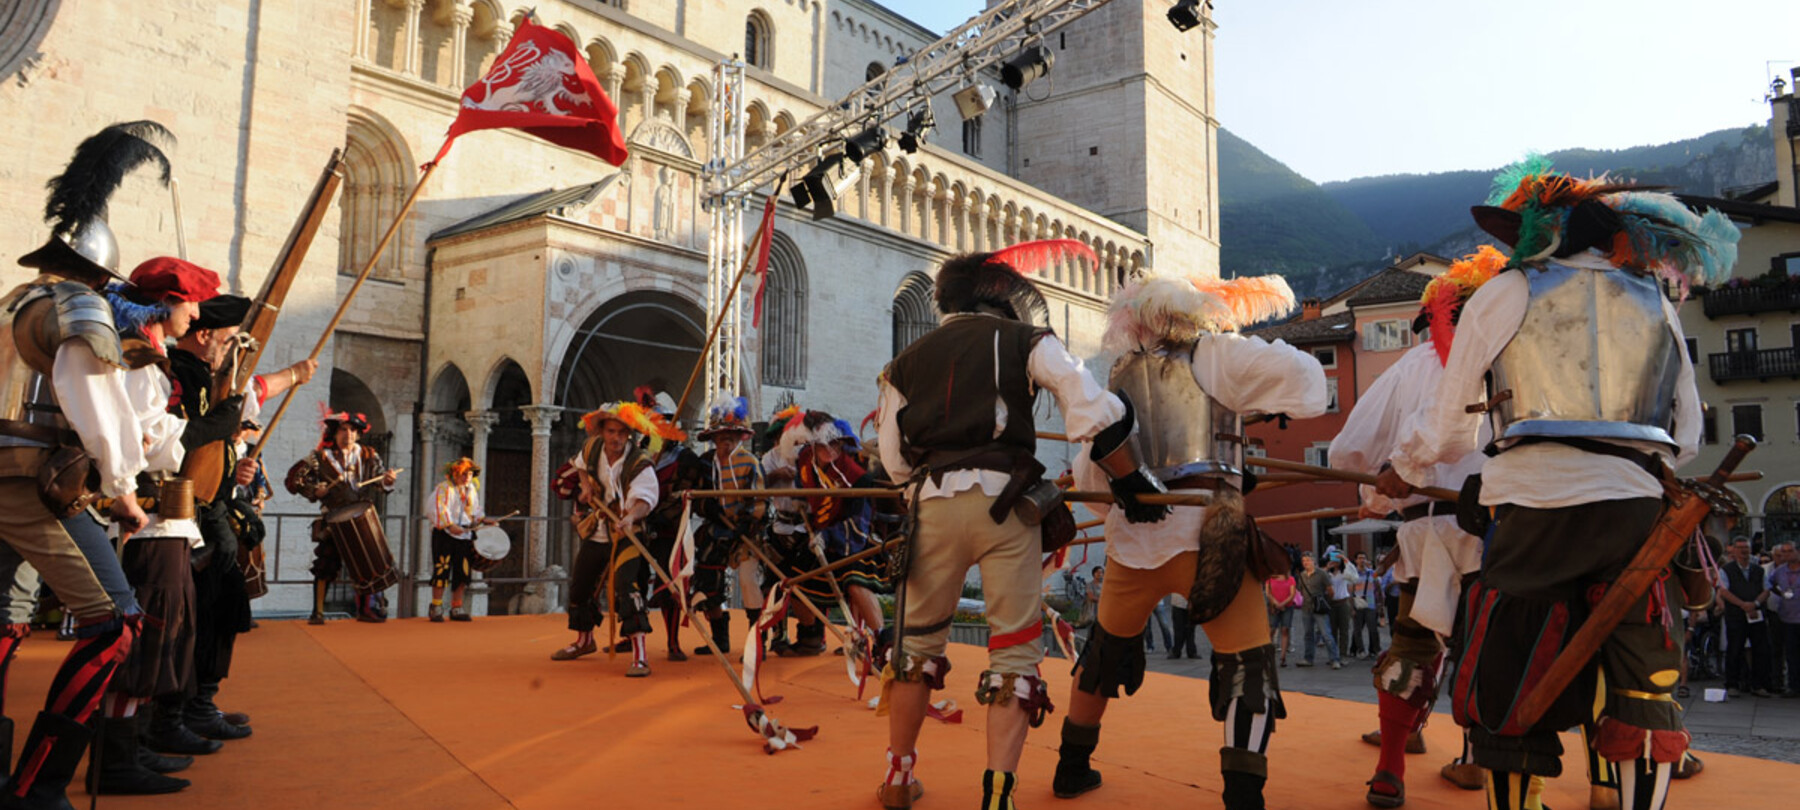 The Feste Vigiliane celebrations in honour of patron saint S. Vigilius inaugurate the Trentino summer